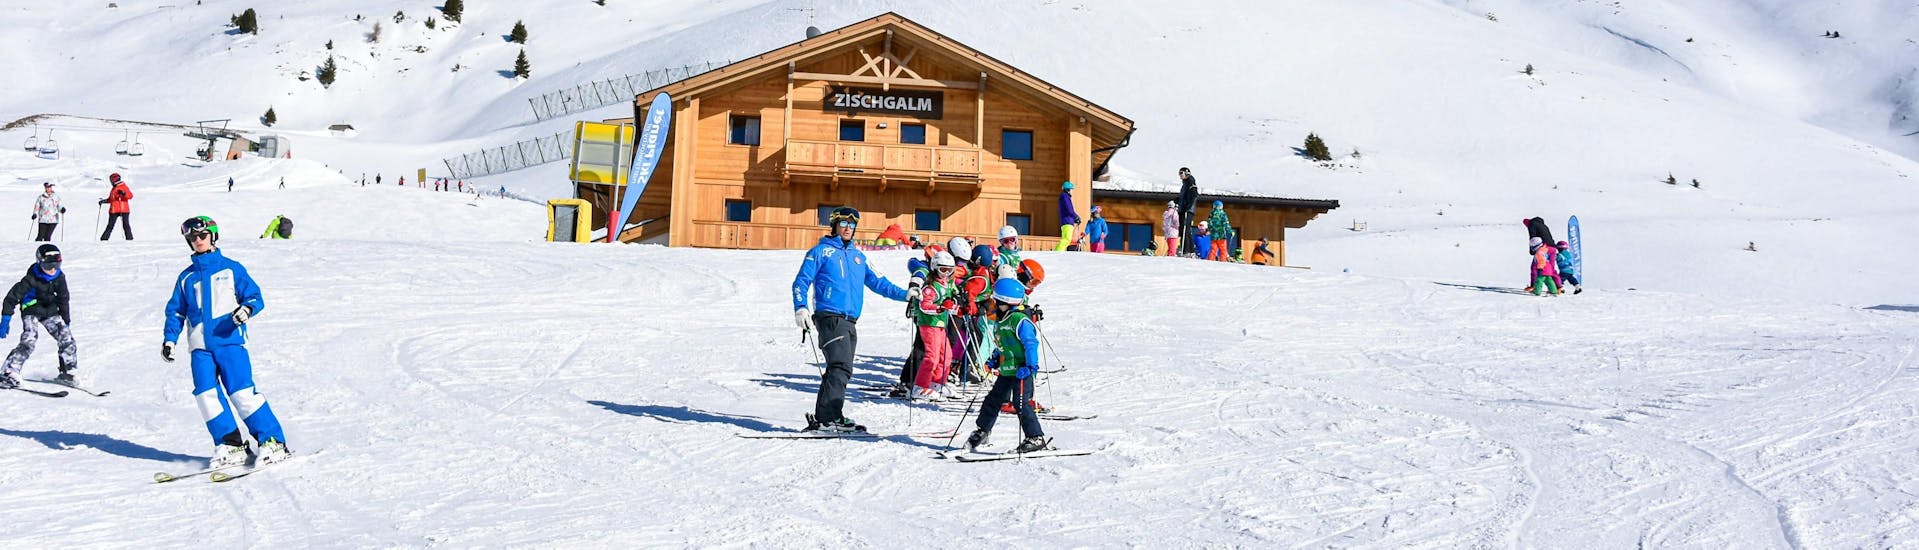 Clases de esquí para niños a partir de 6 años.